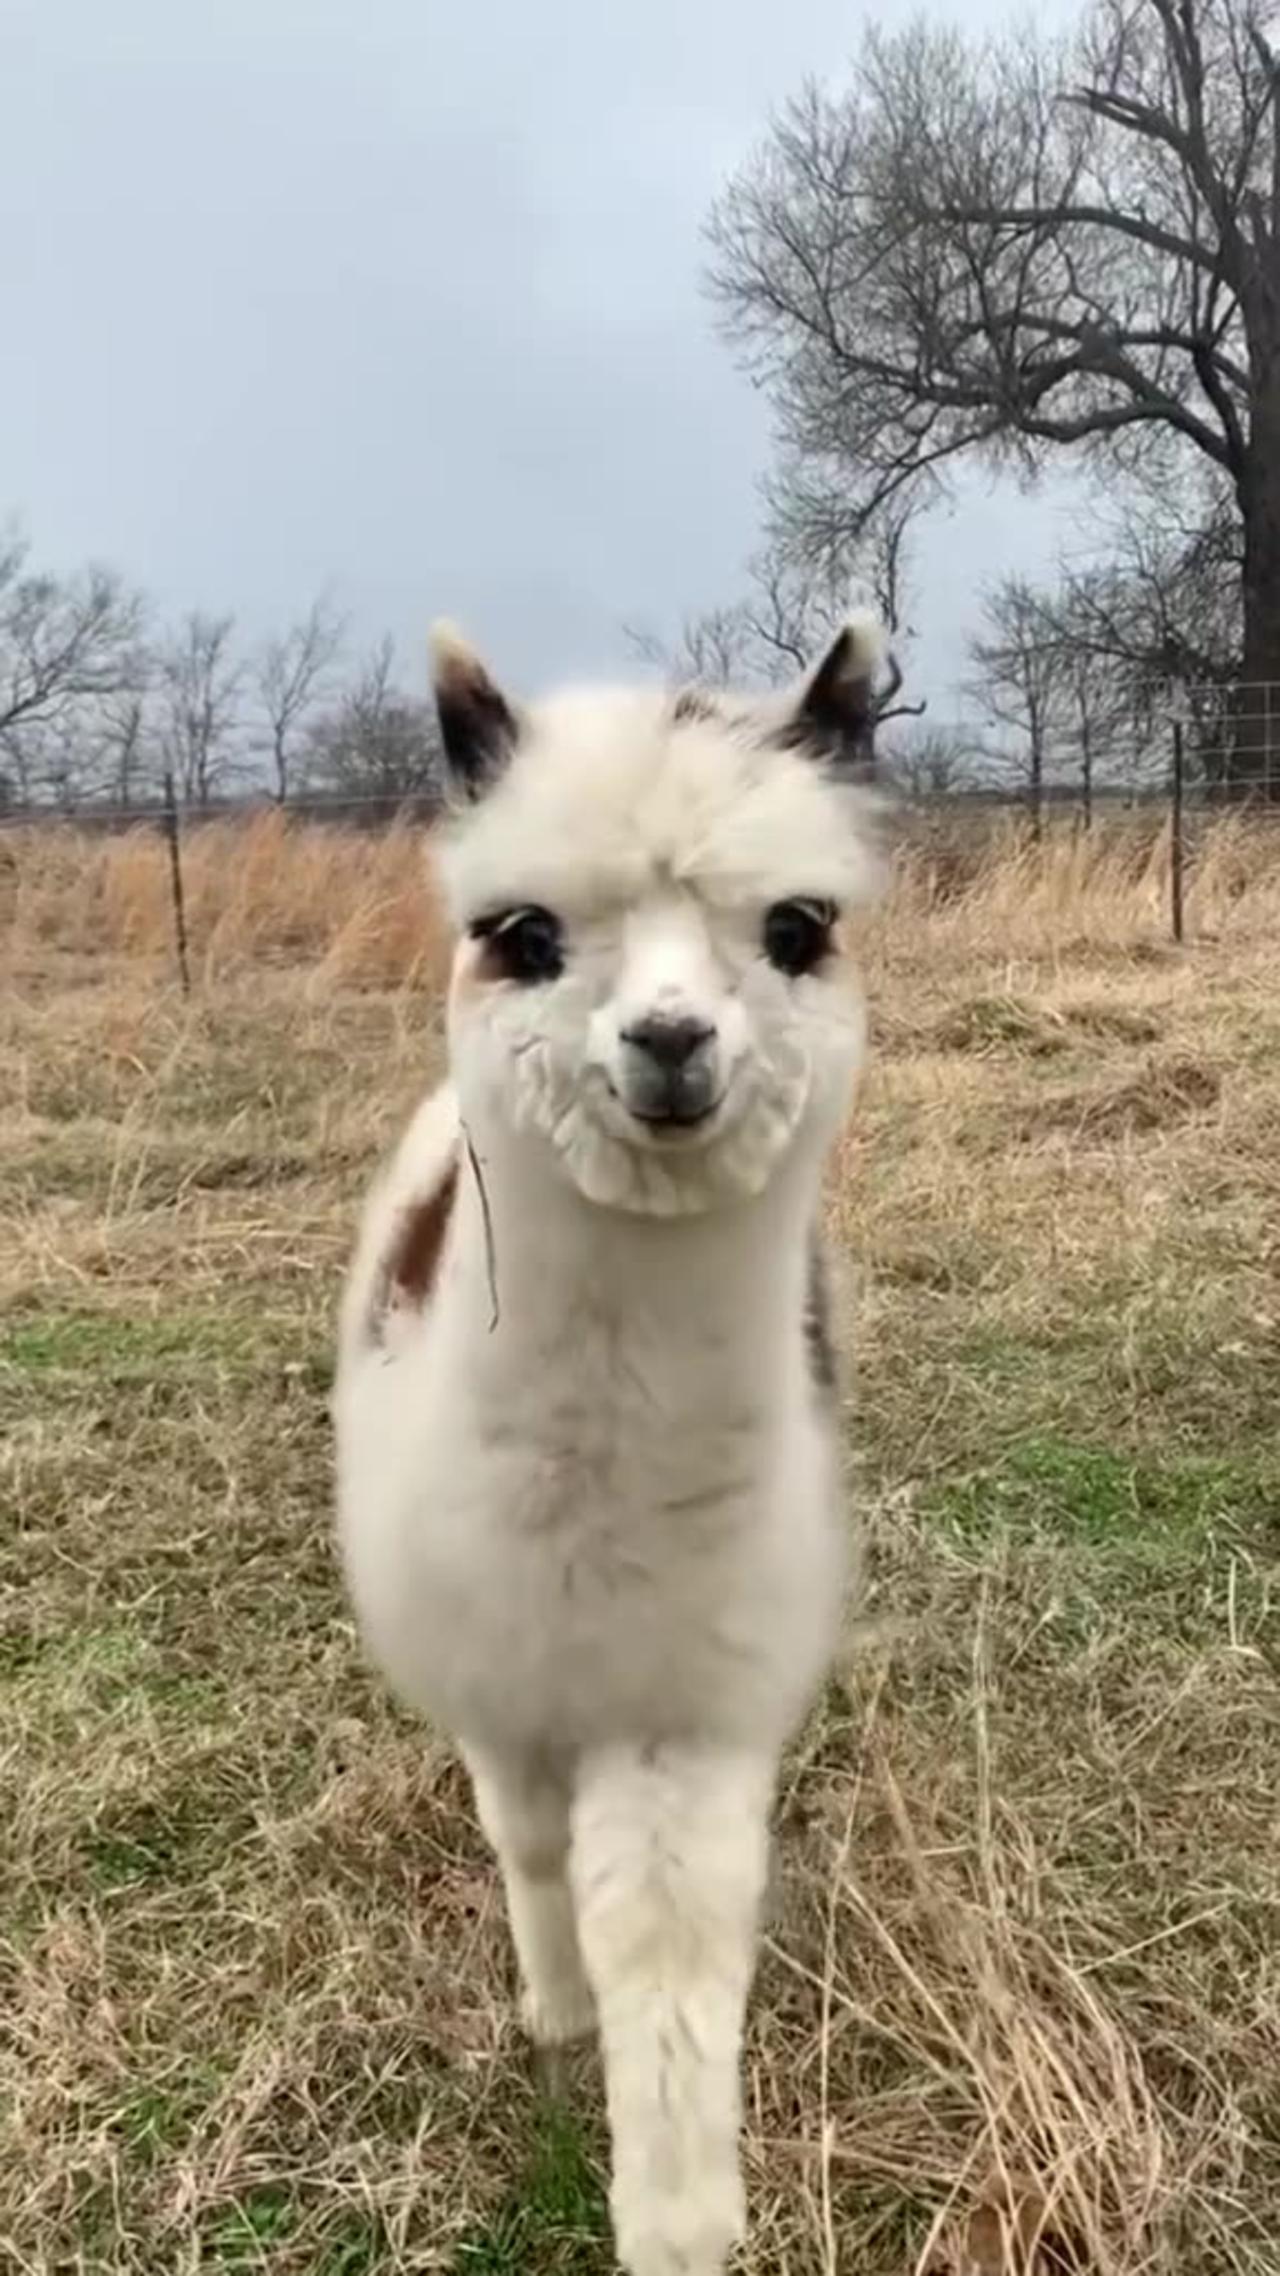 Cute baby cow❣️ Cute goat